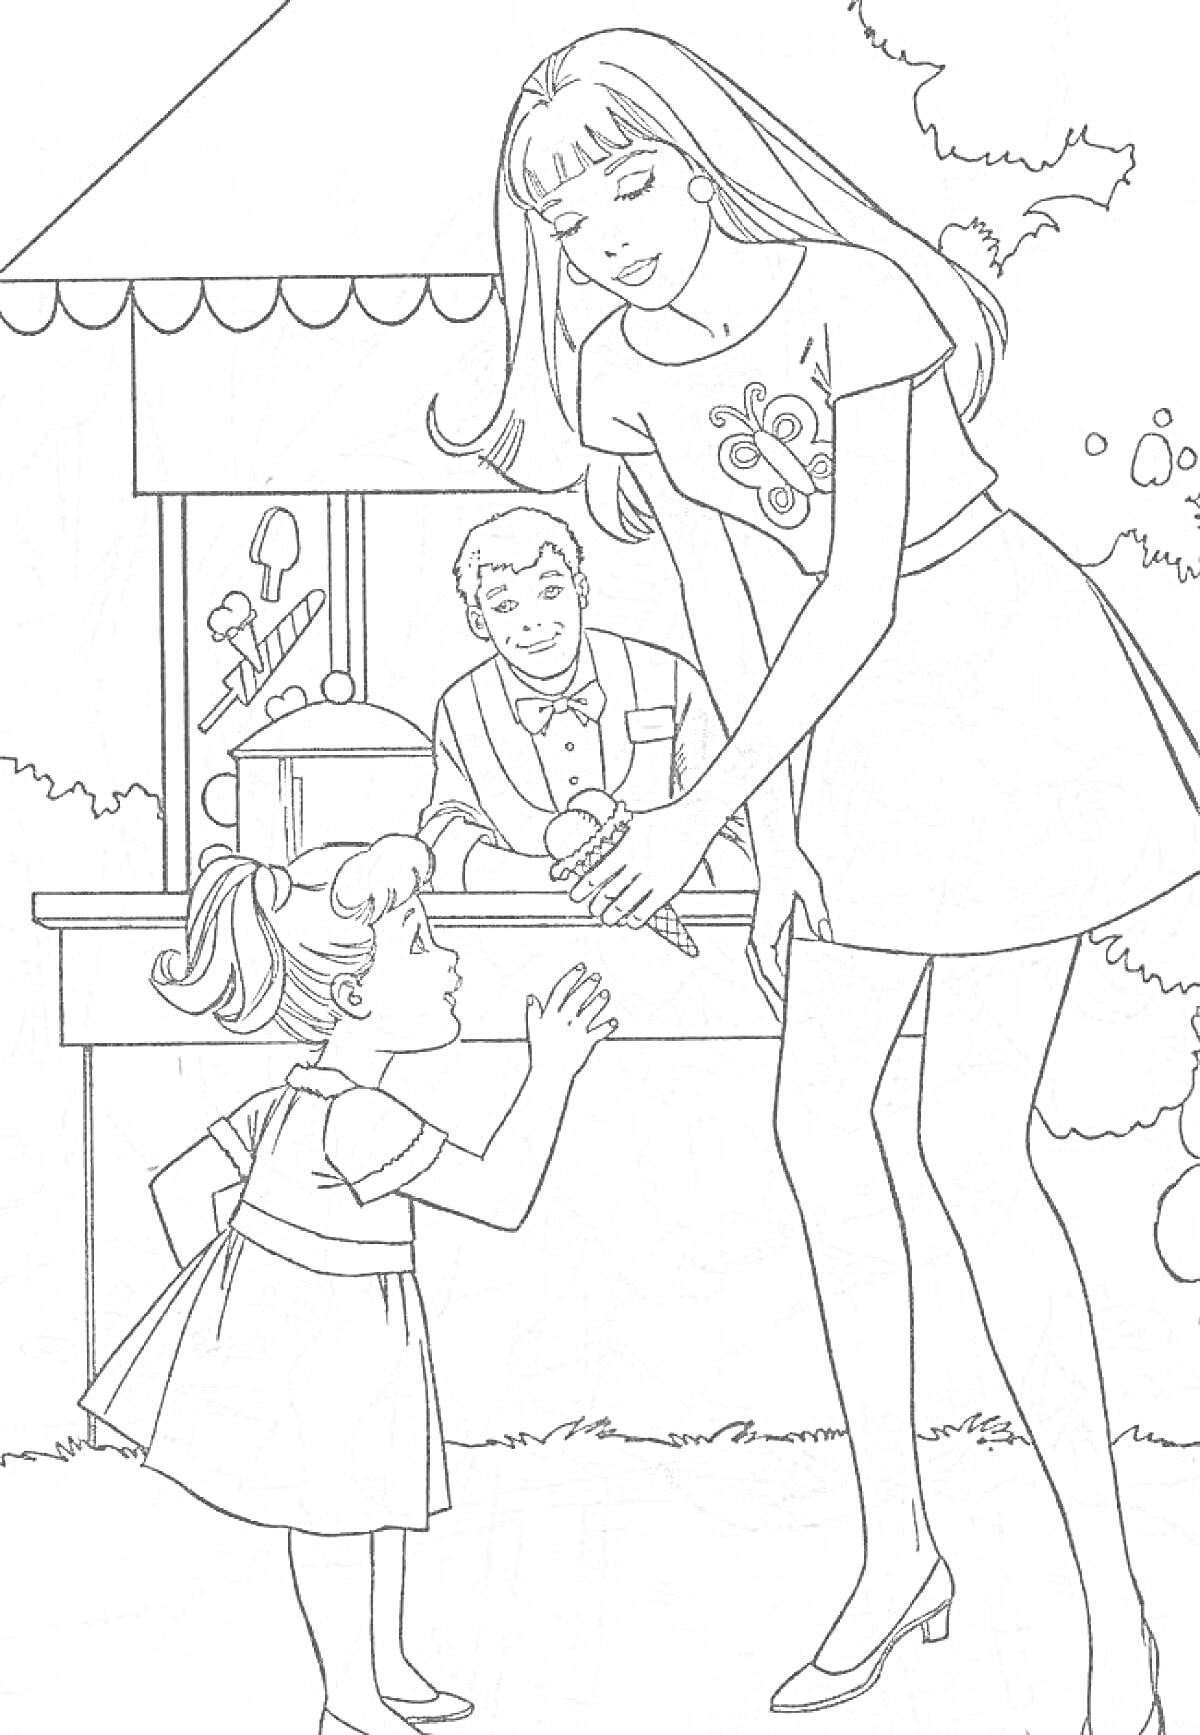 Взрослая женщина с девочкой, киоск с продавцом, деревья и кусты. Женщина протягивает руку девочке, рядом с киоском игрушки.